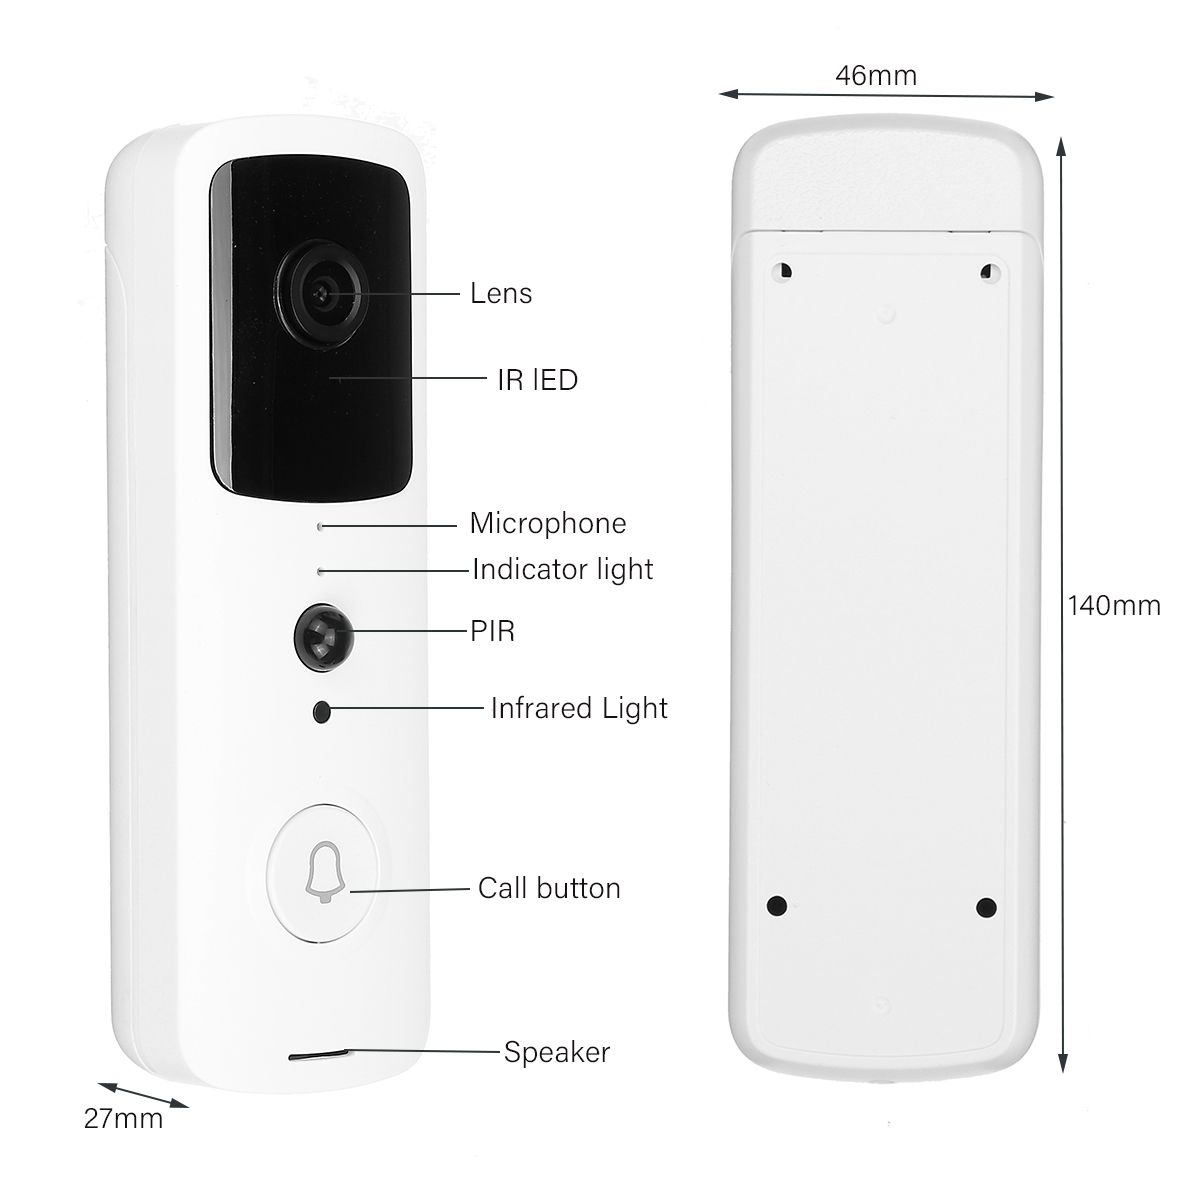 Wireless-Video-Doorbell-Smart-Phone-Door-Ring-Intercom-Camera-Security-Bell-EU-Plug-Video-Doorbell-1731156